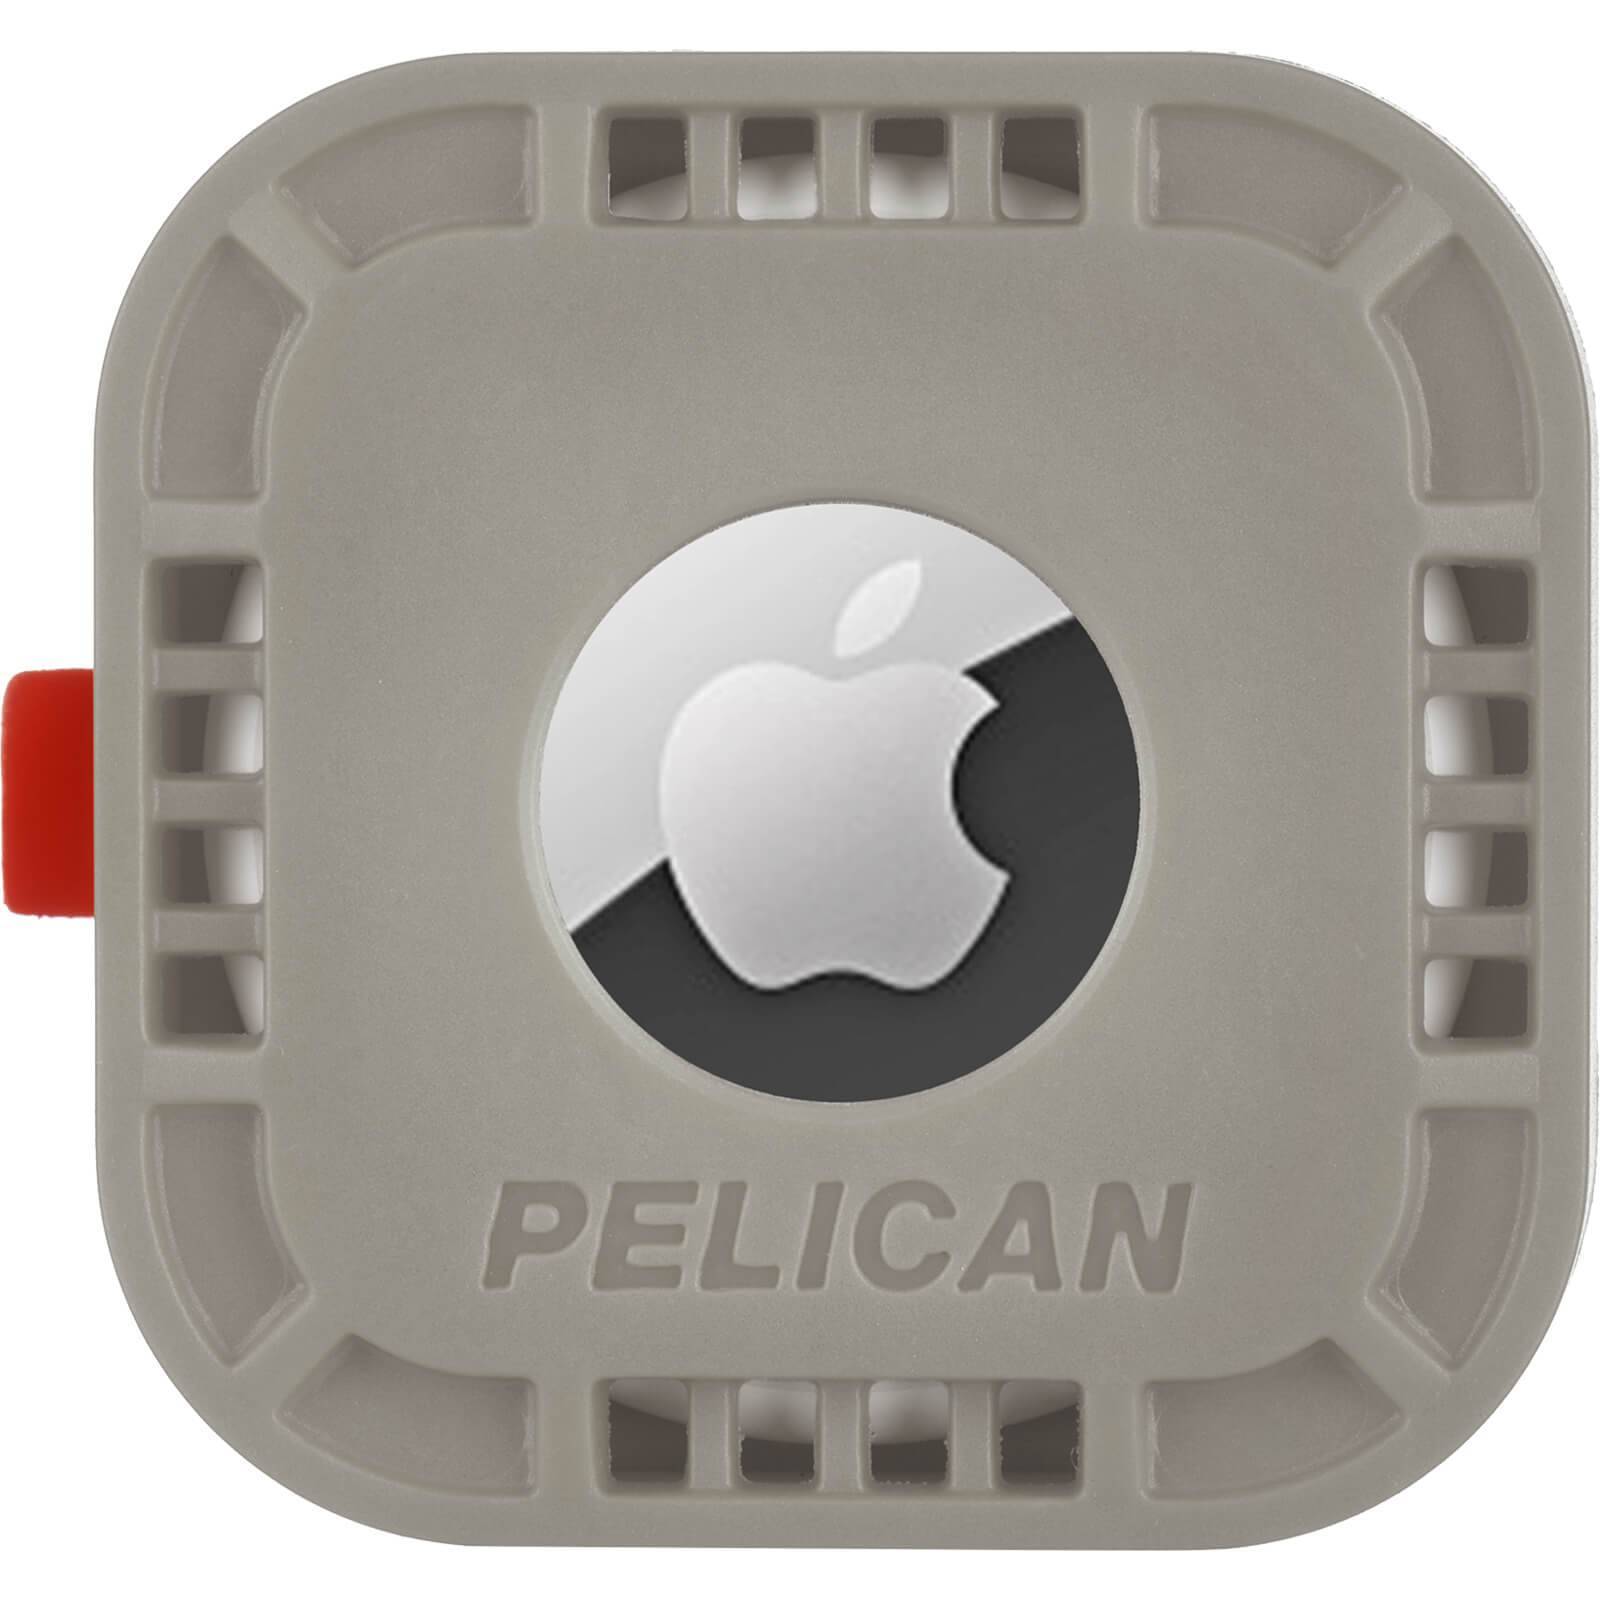 Pelican case • Jämför (100+ produkter) på PriceRunner »